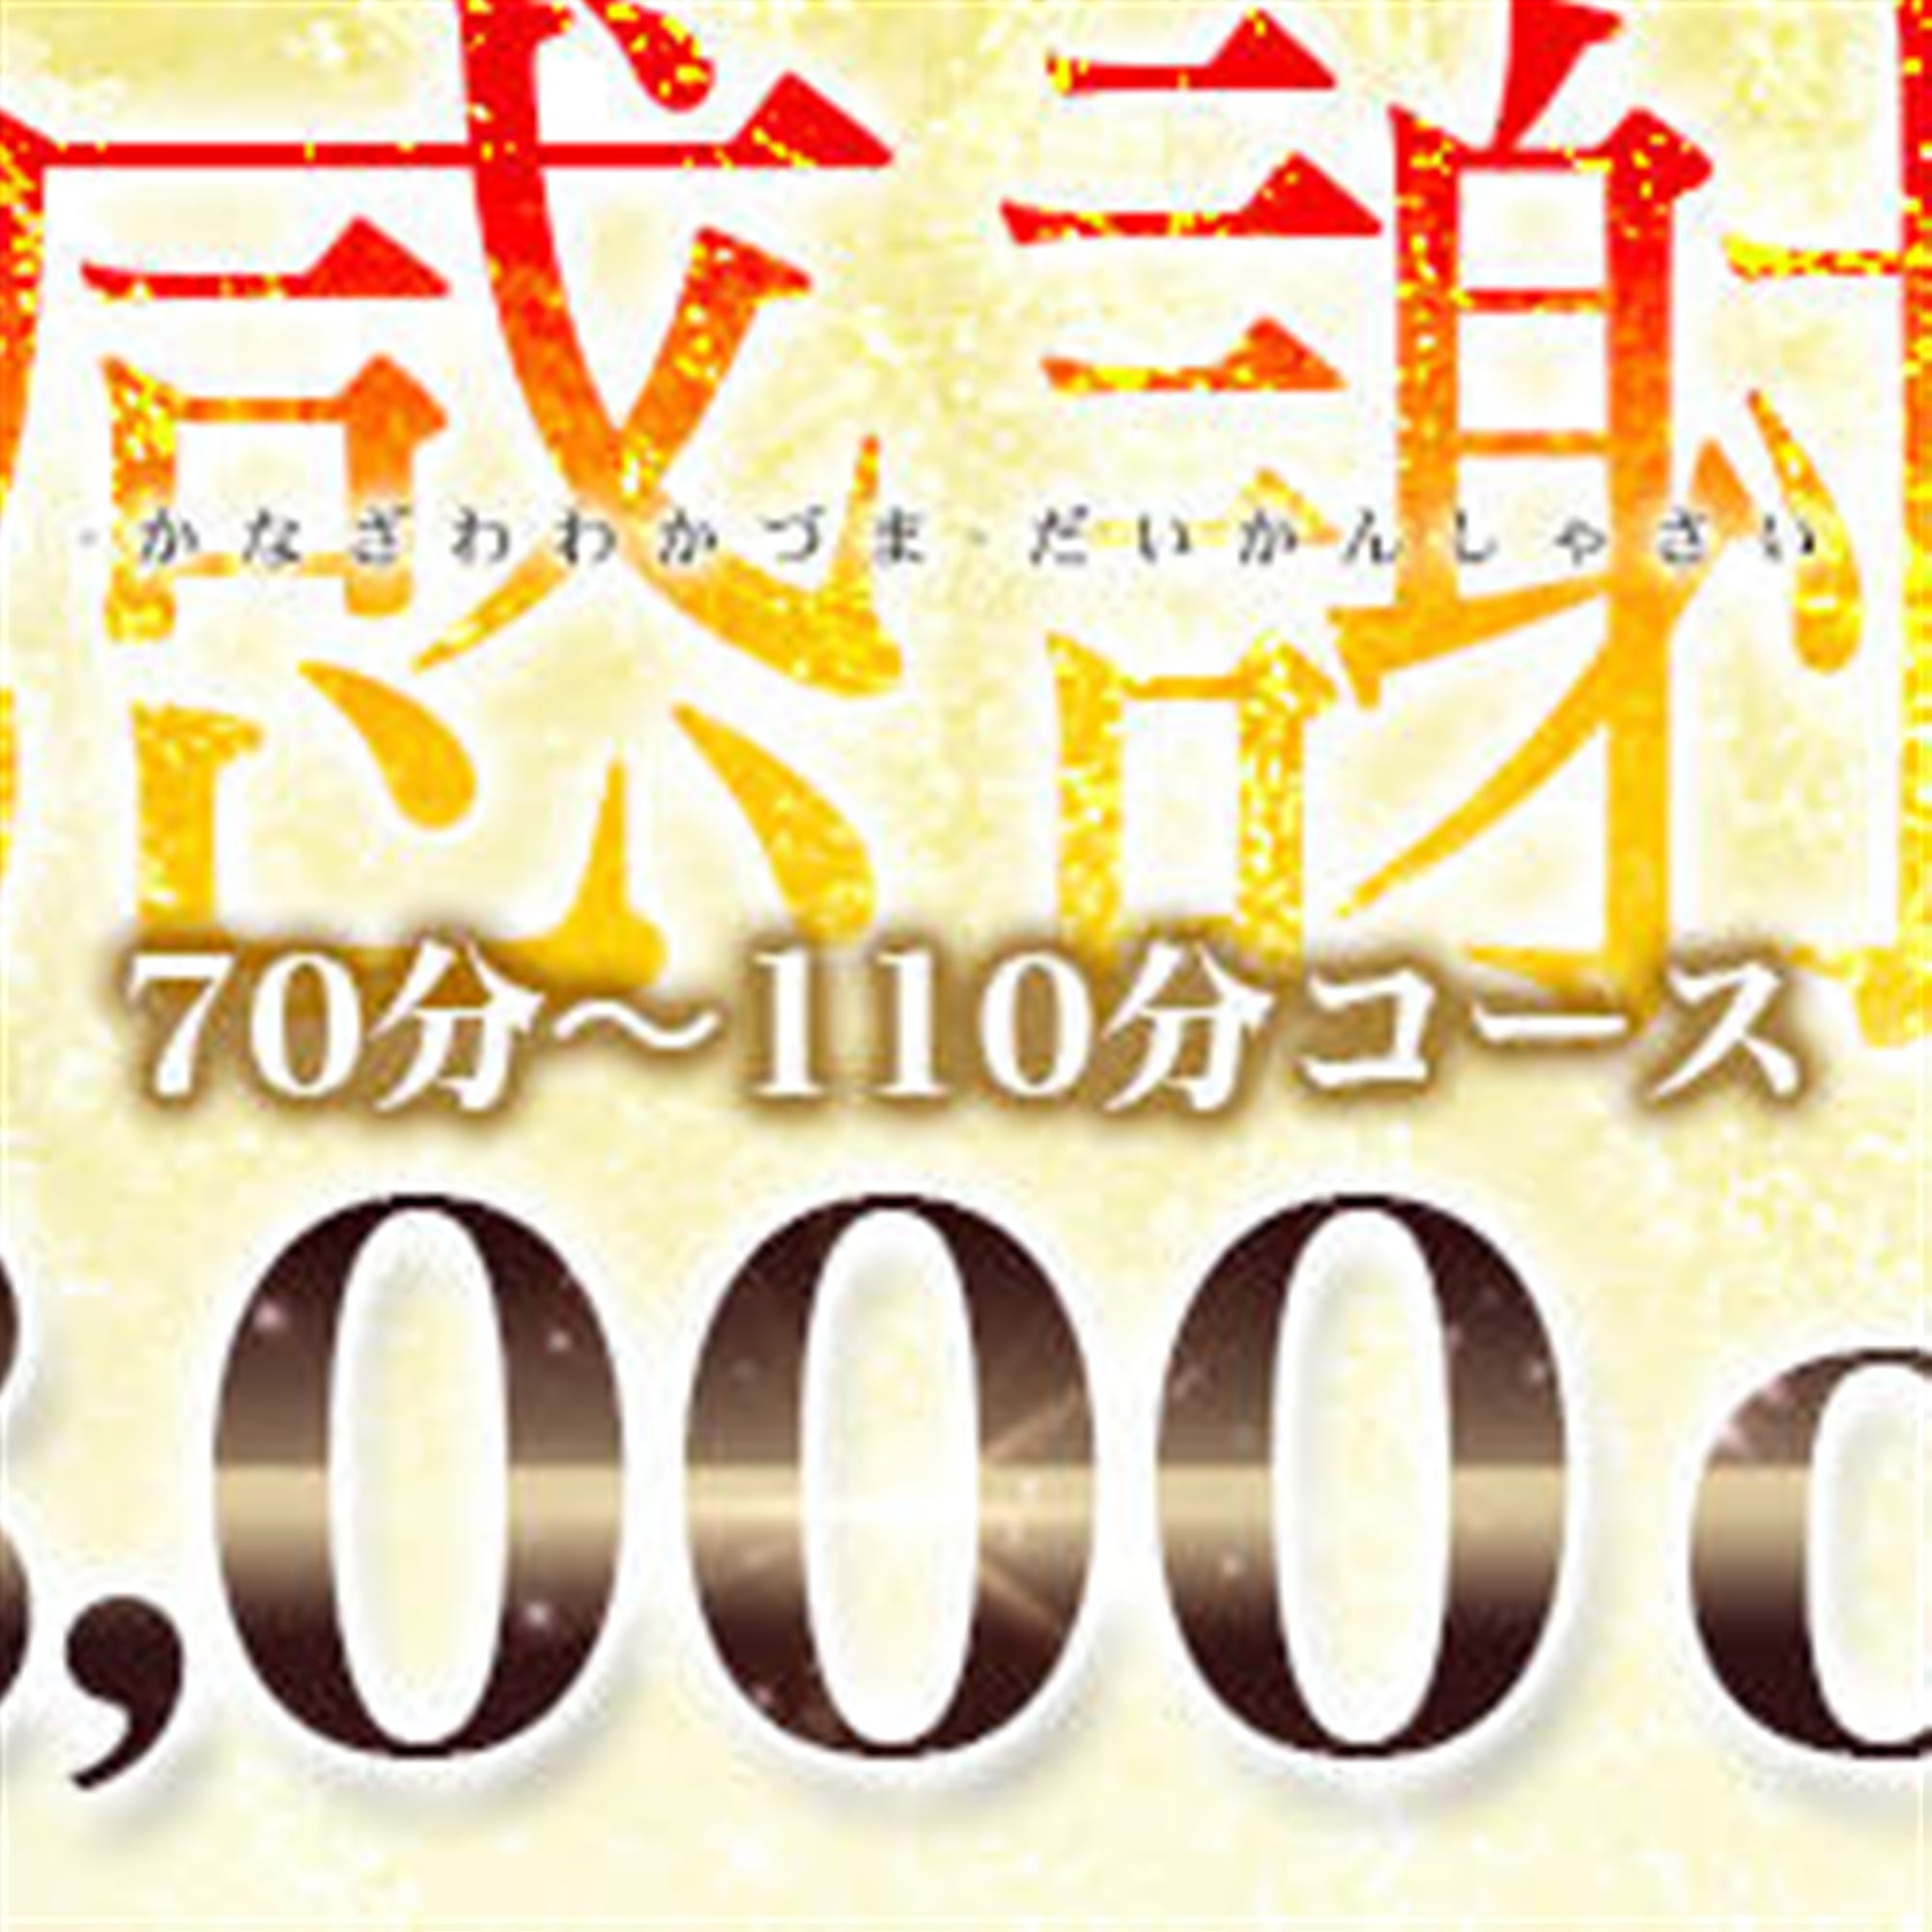 「3,000円OFFのSpecial Event+パネル指名無料」04/28(日) 23:06 | 金沢若妻のお得なニュース